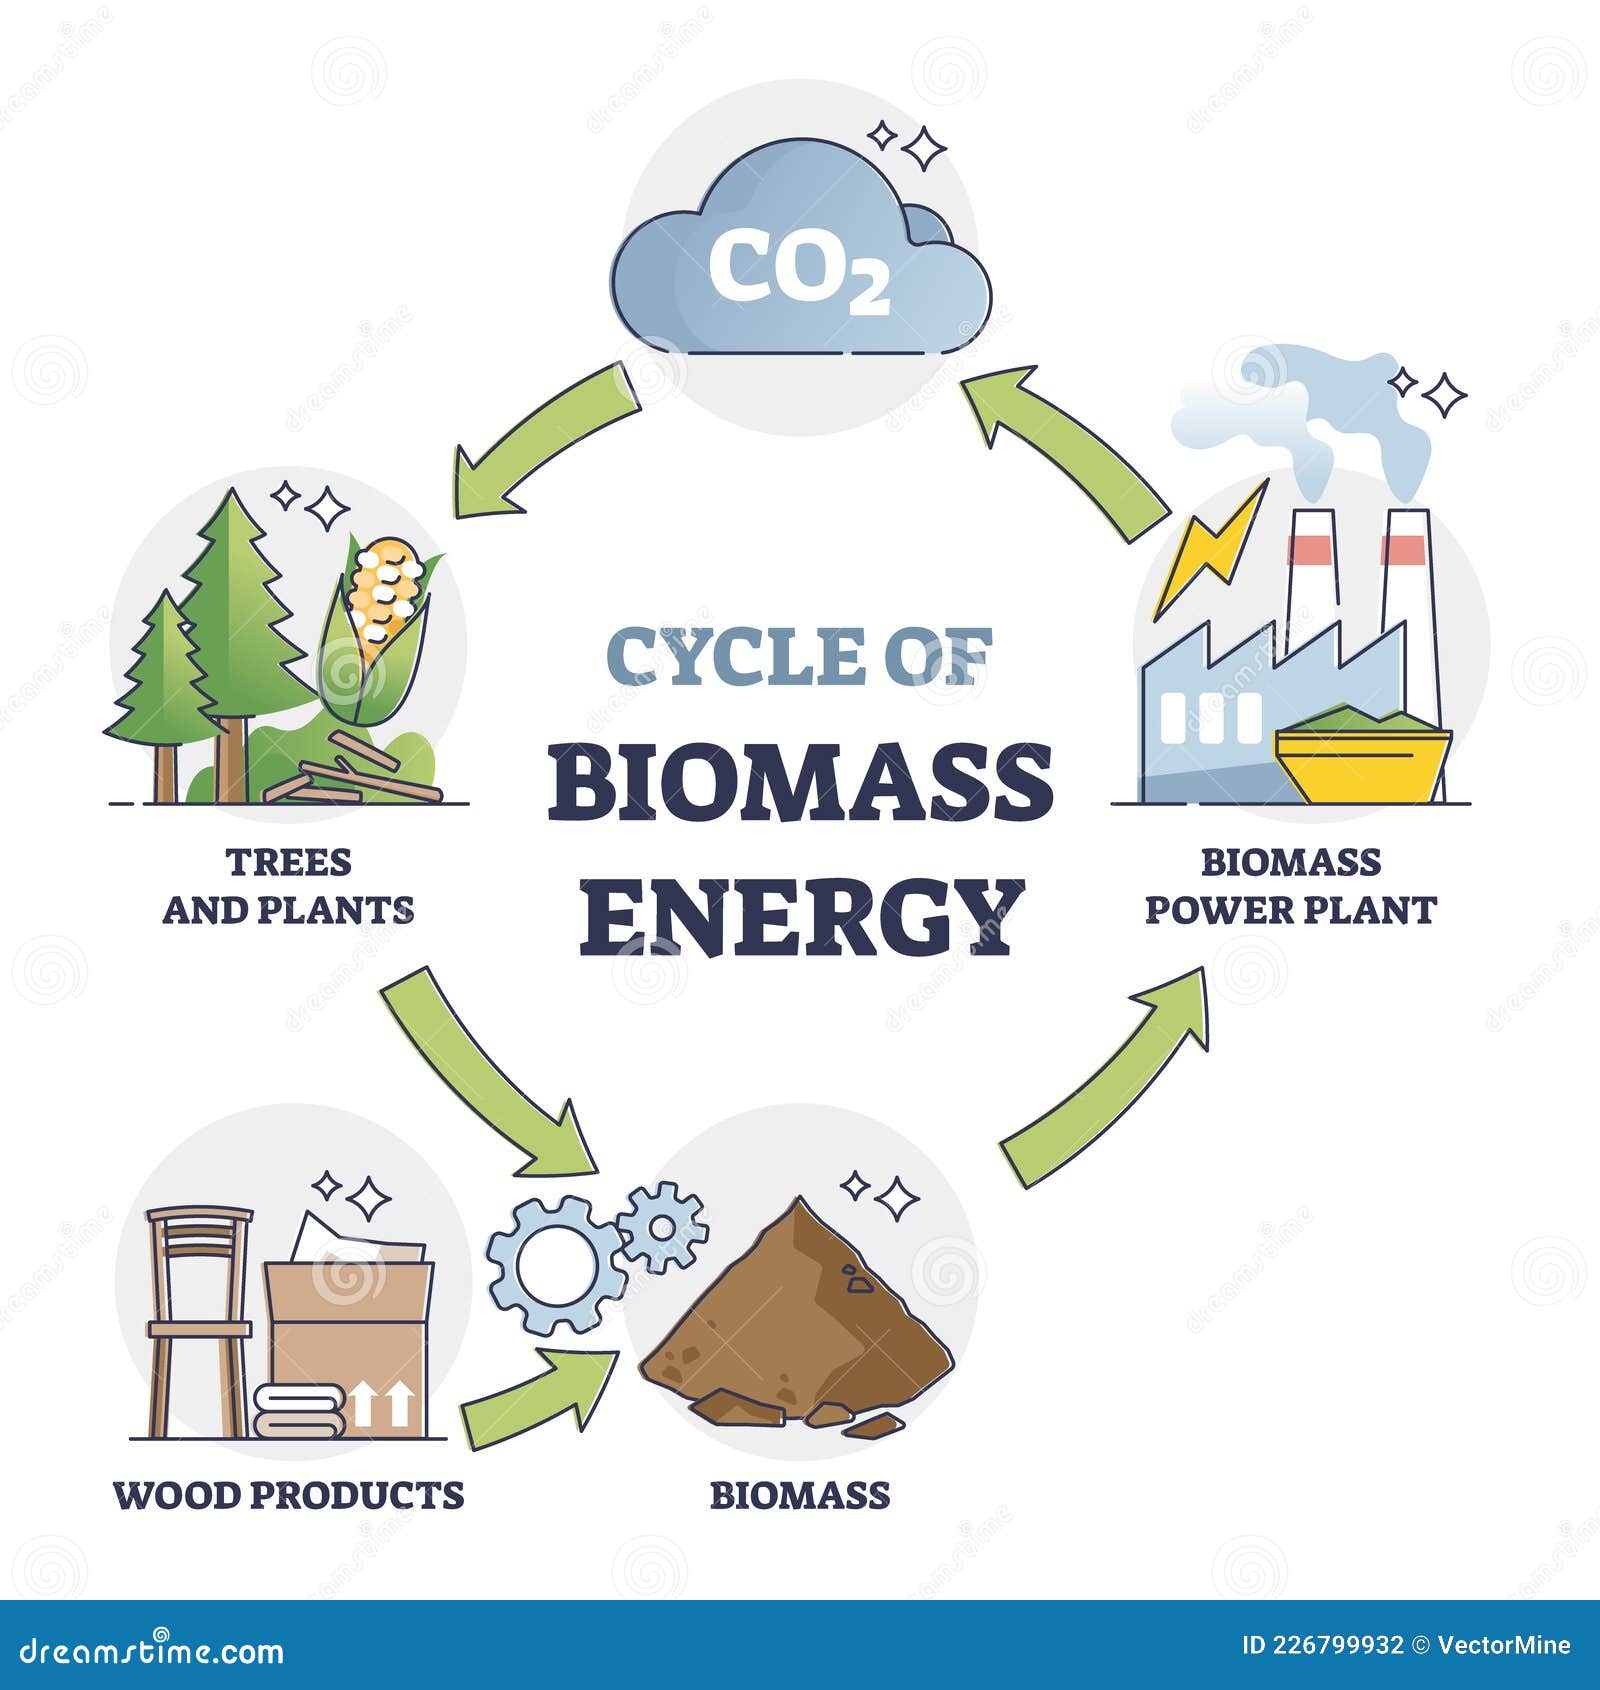 Biomass Biomass production